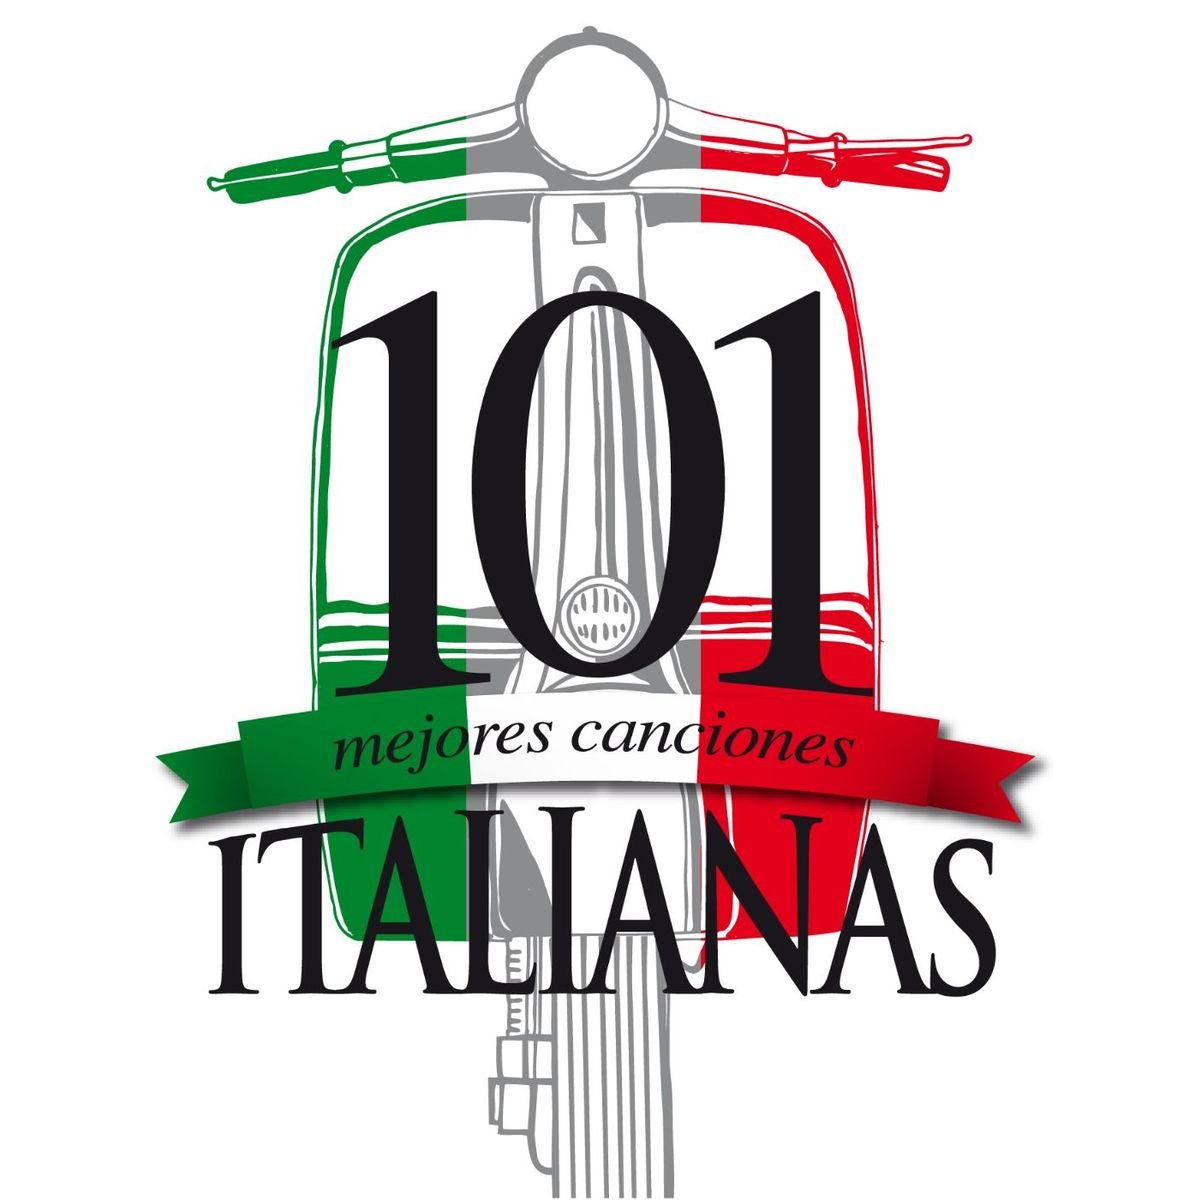 Las 101 mejores canciones Italianas — Various Artists | Last.fm